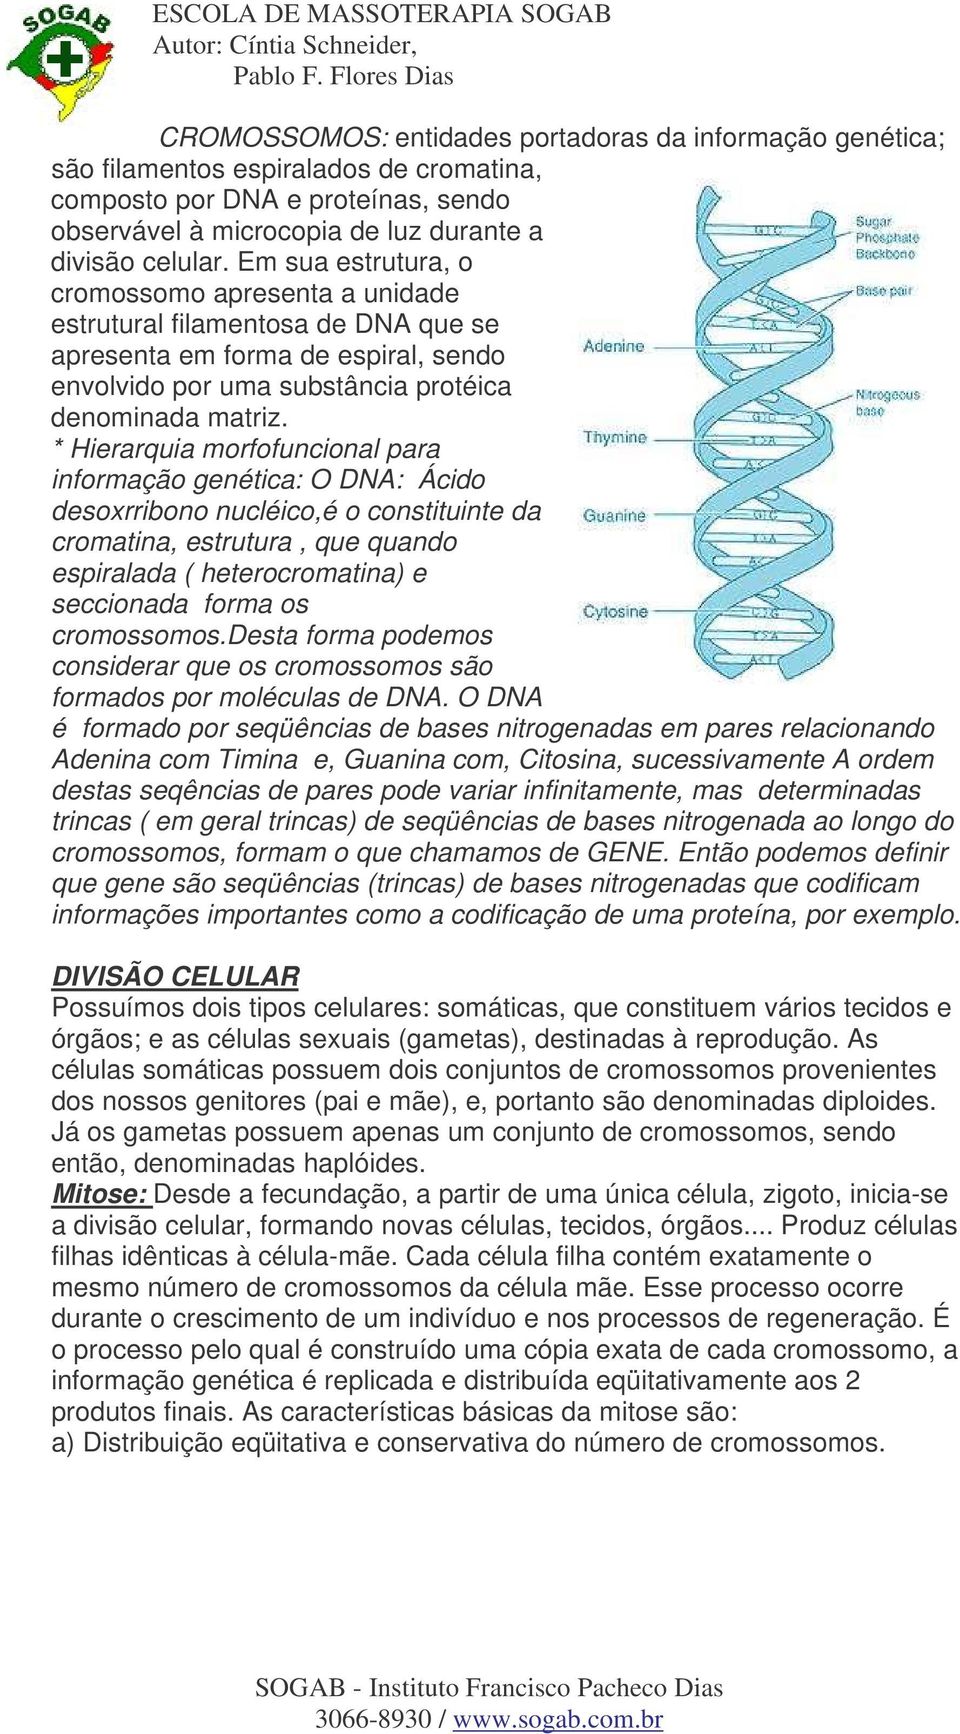 * Hierarquia morfofuncional para informação genética: O DNA: Ácido desoxrribono nucléico,é o constituinte da cromatina, estrutura, que quando espiralada ( heterocromatina) e seccionada forma os